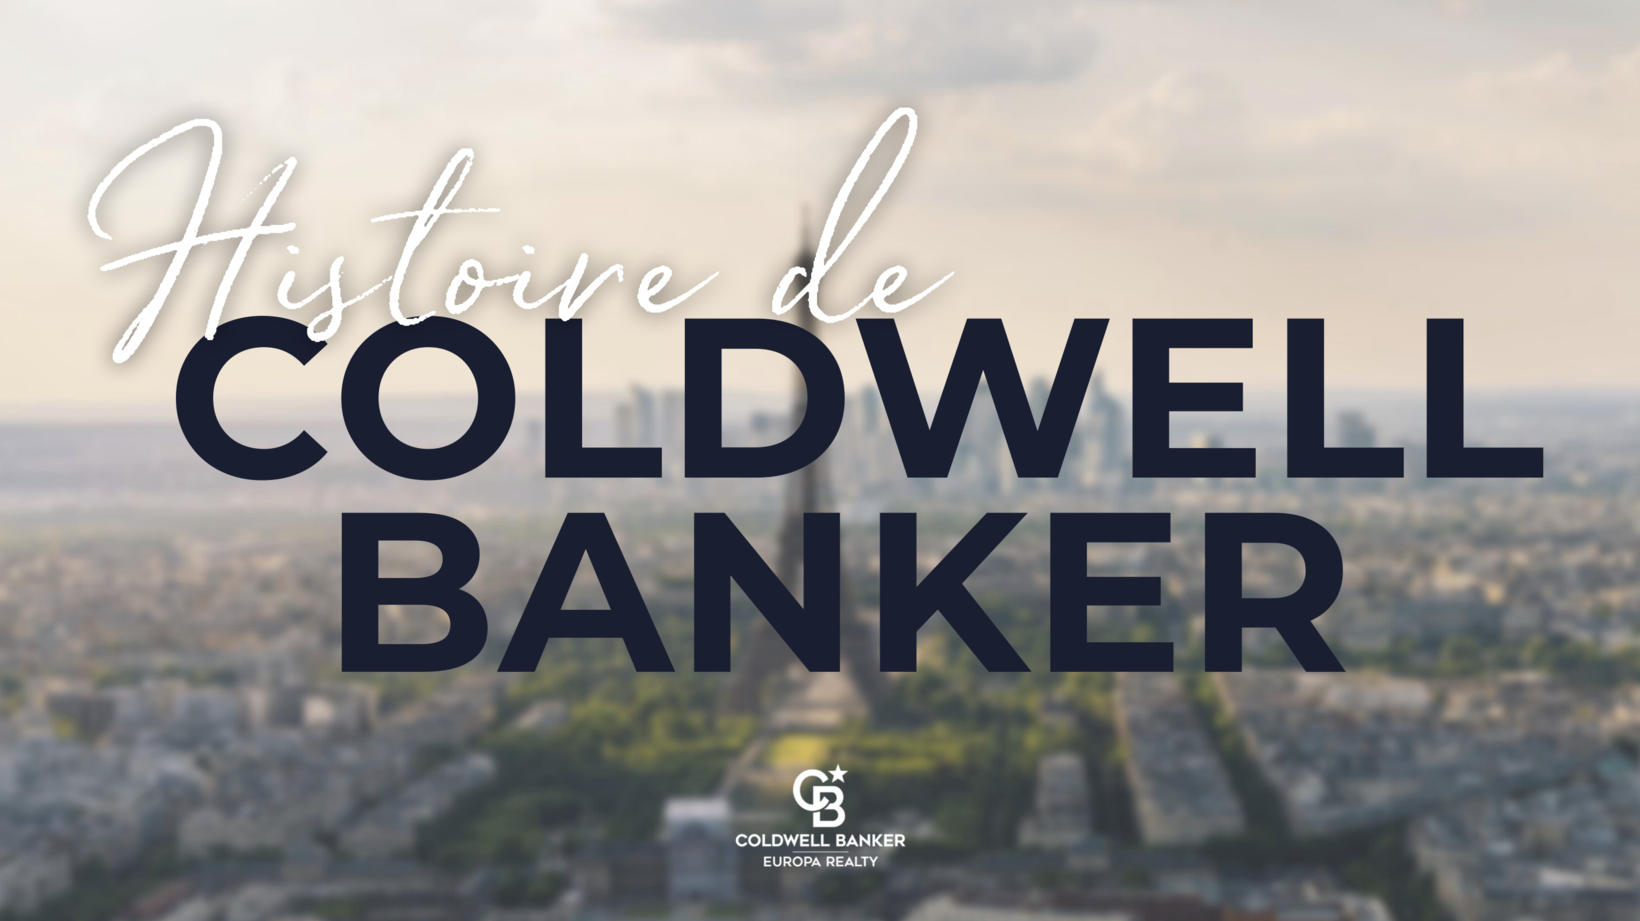 Connaissez-vous l'histoire centenaire de Coldwell Banker ?